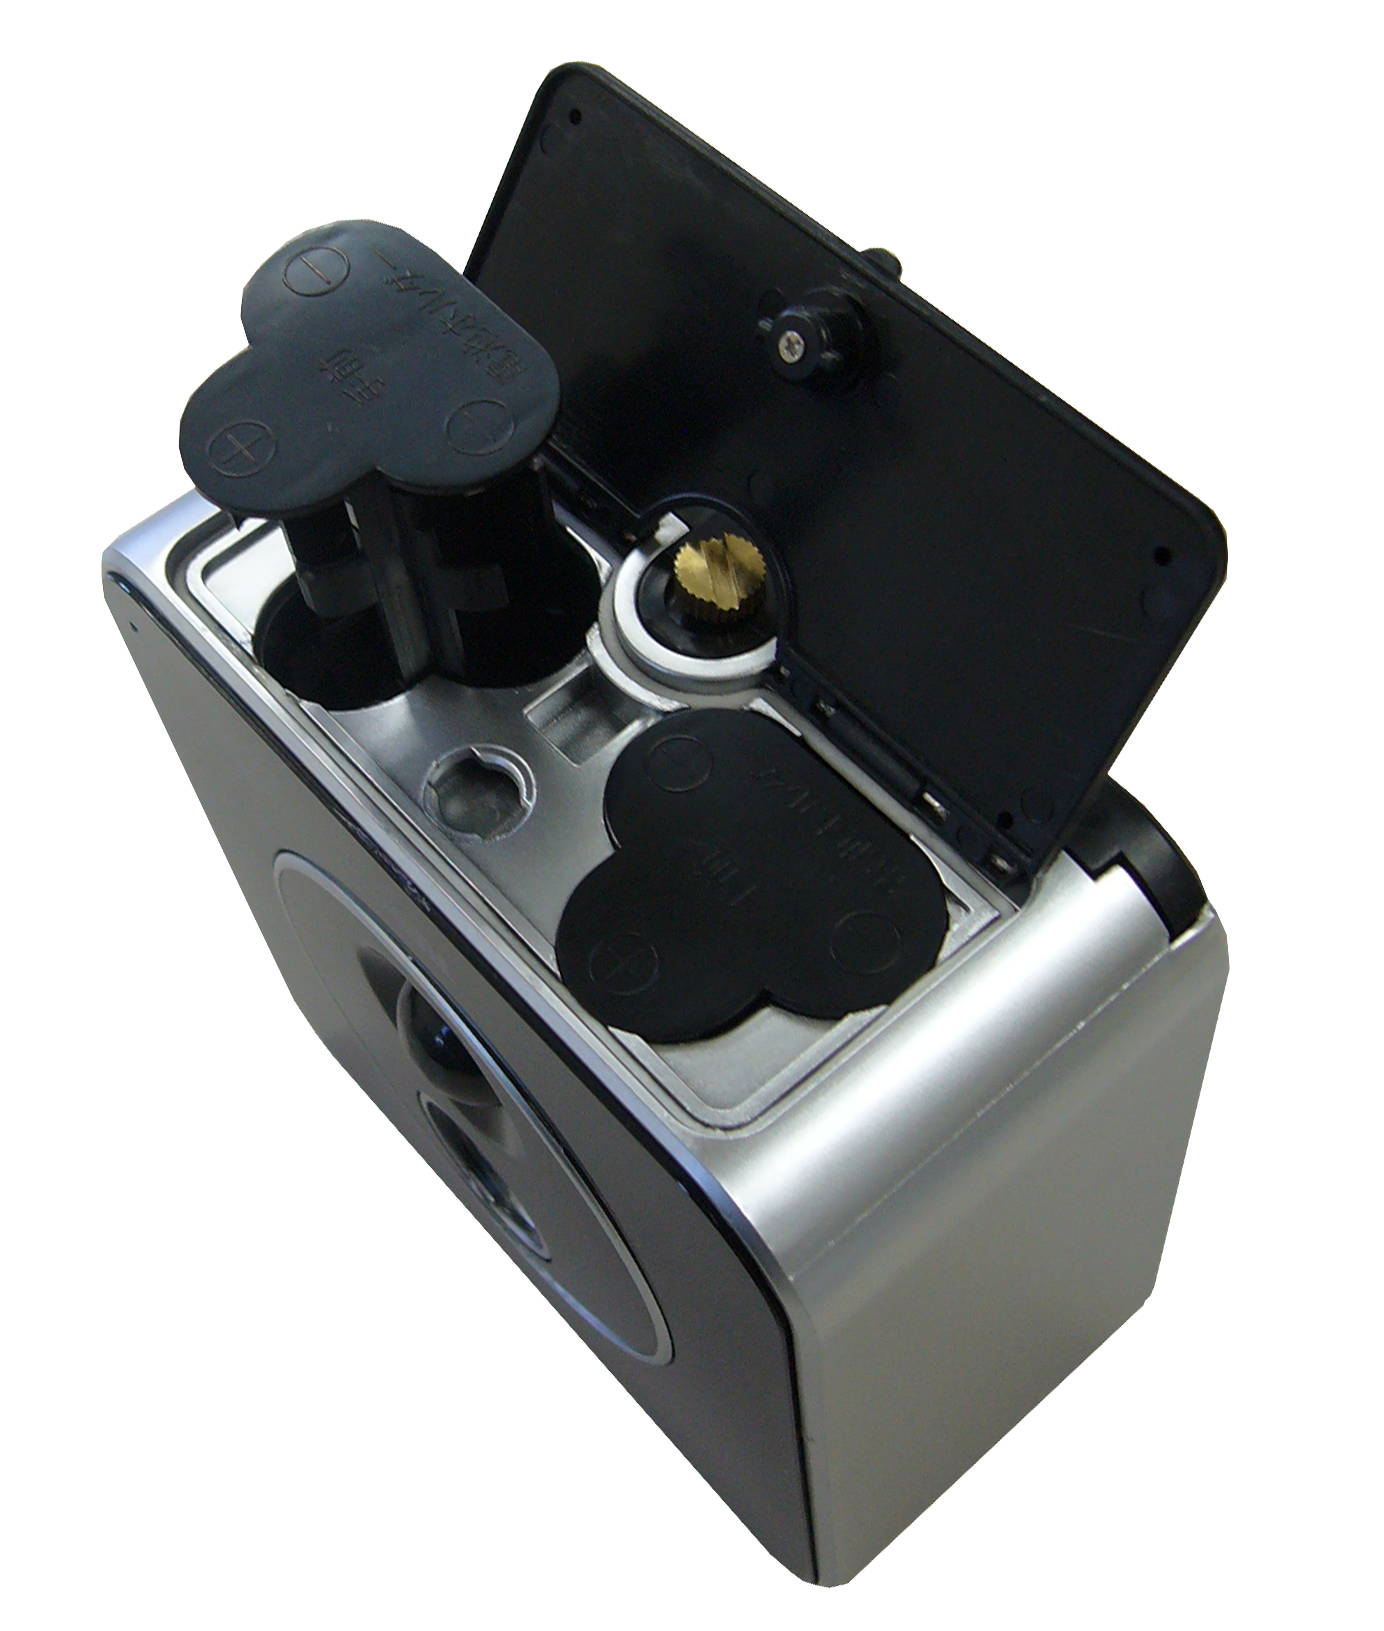 液晶画面付き SDカード録画式センサーカメラ SD3000LCD – リーベックス株式会社